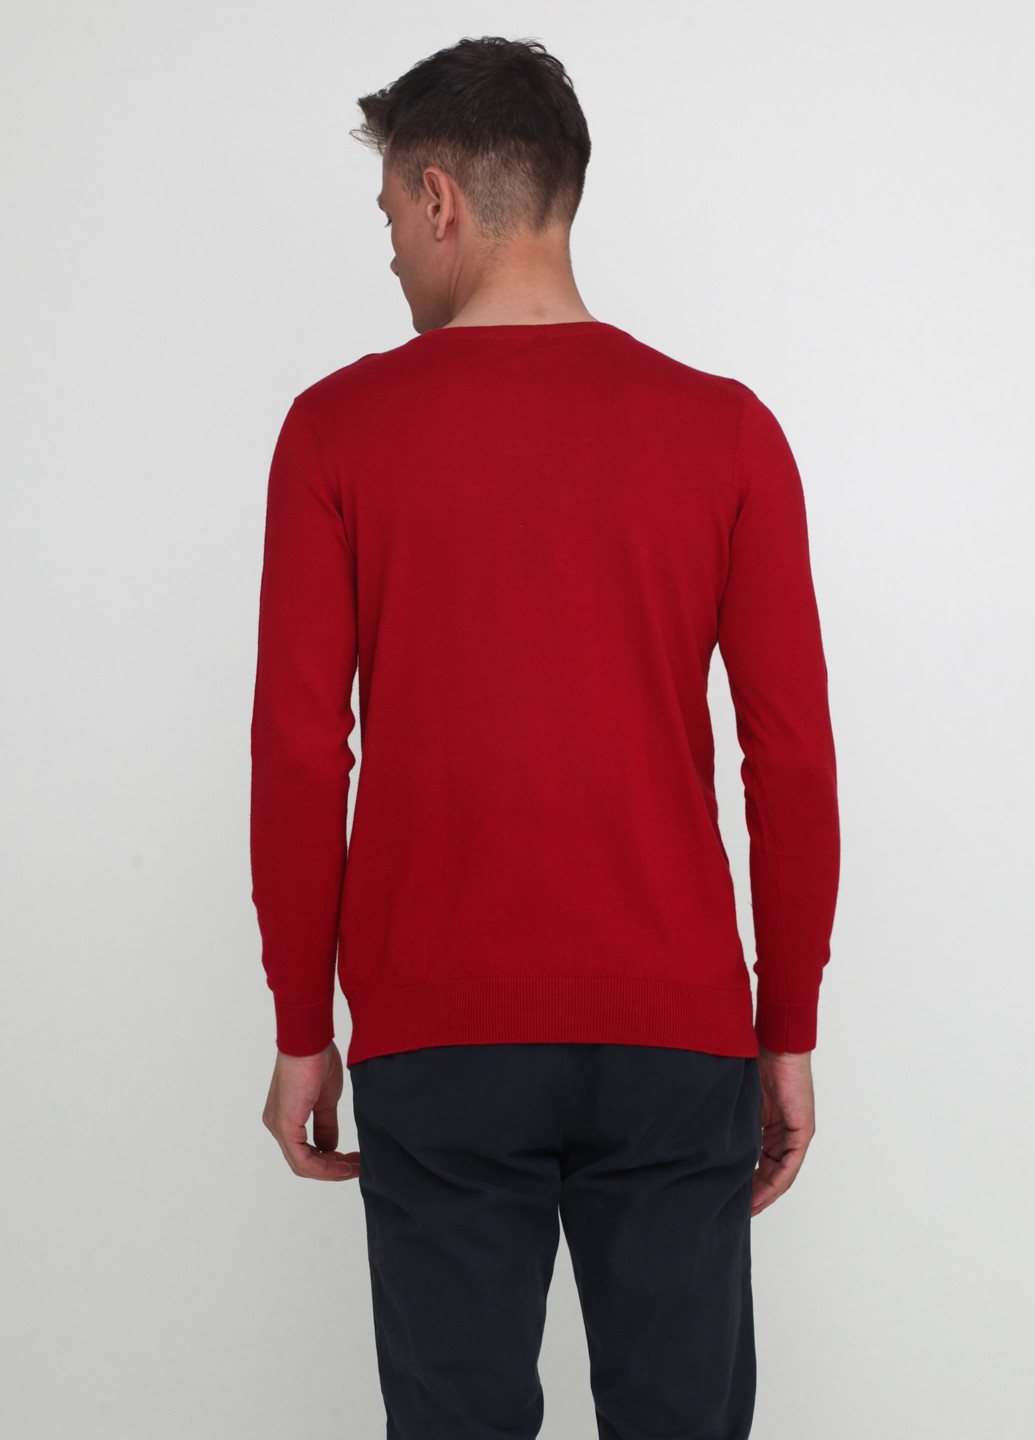 Красный демисезонный пуловер пуловер Norsons